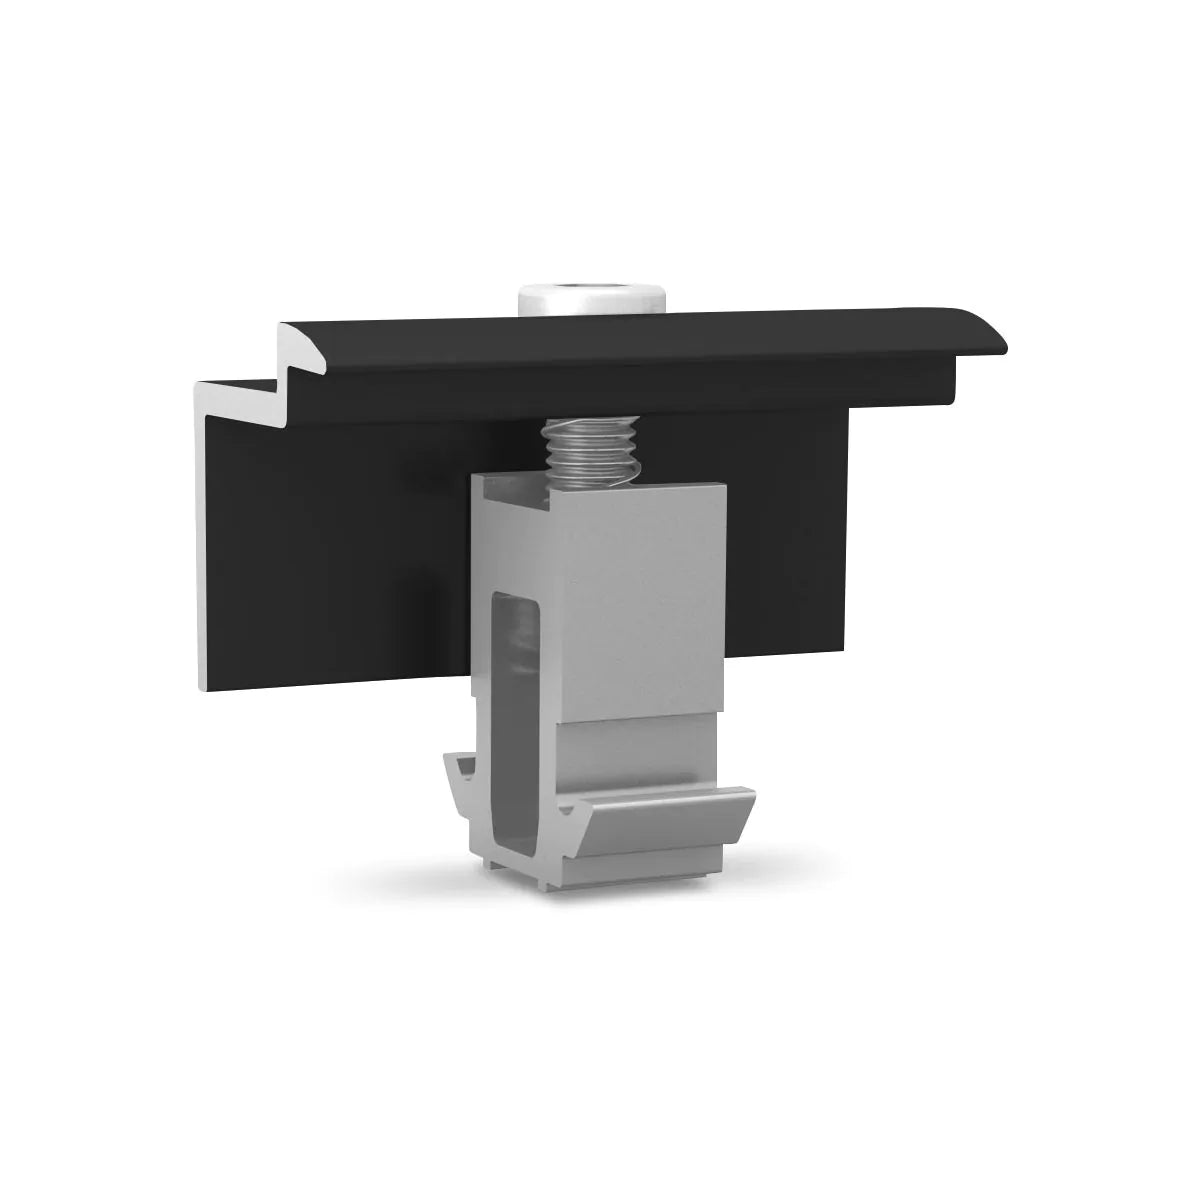 K2 - MiniClamp ändklämma 30-50 mm, svart anodiserad